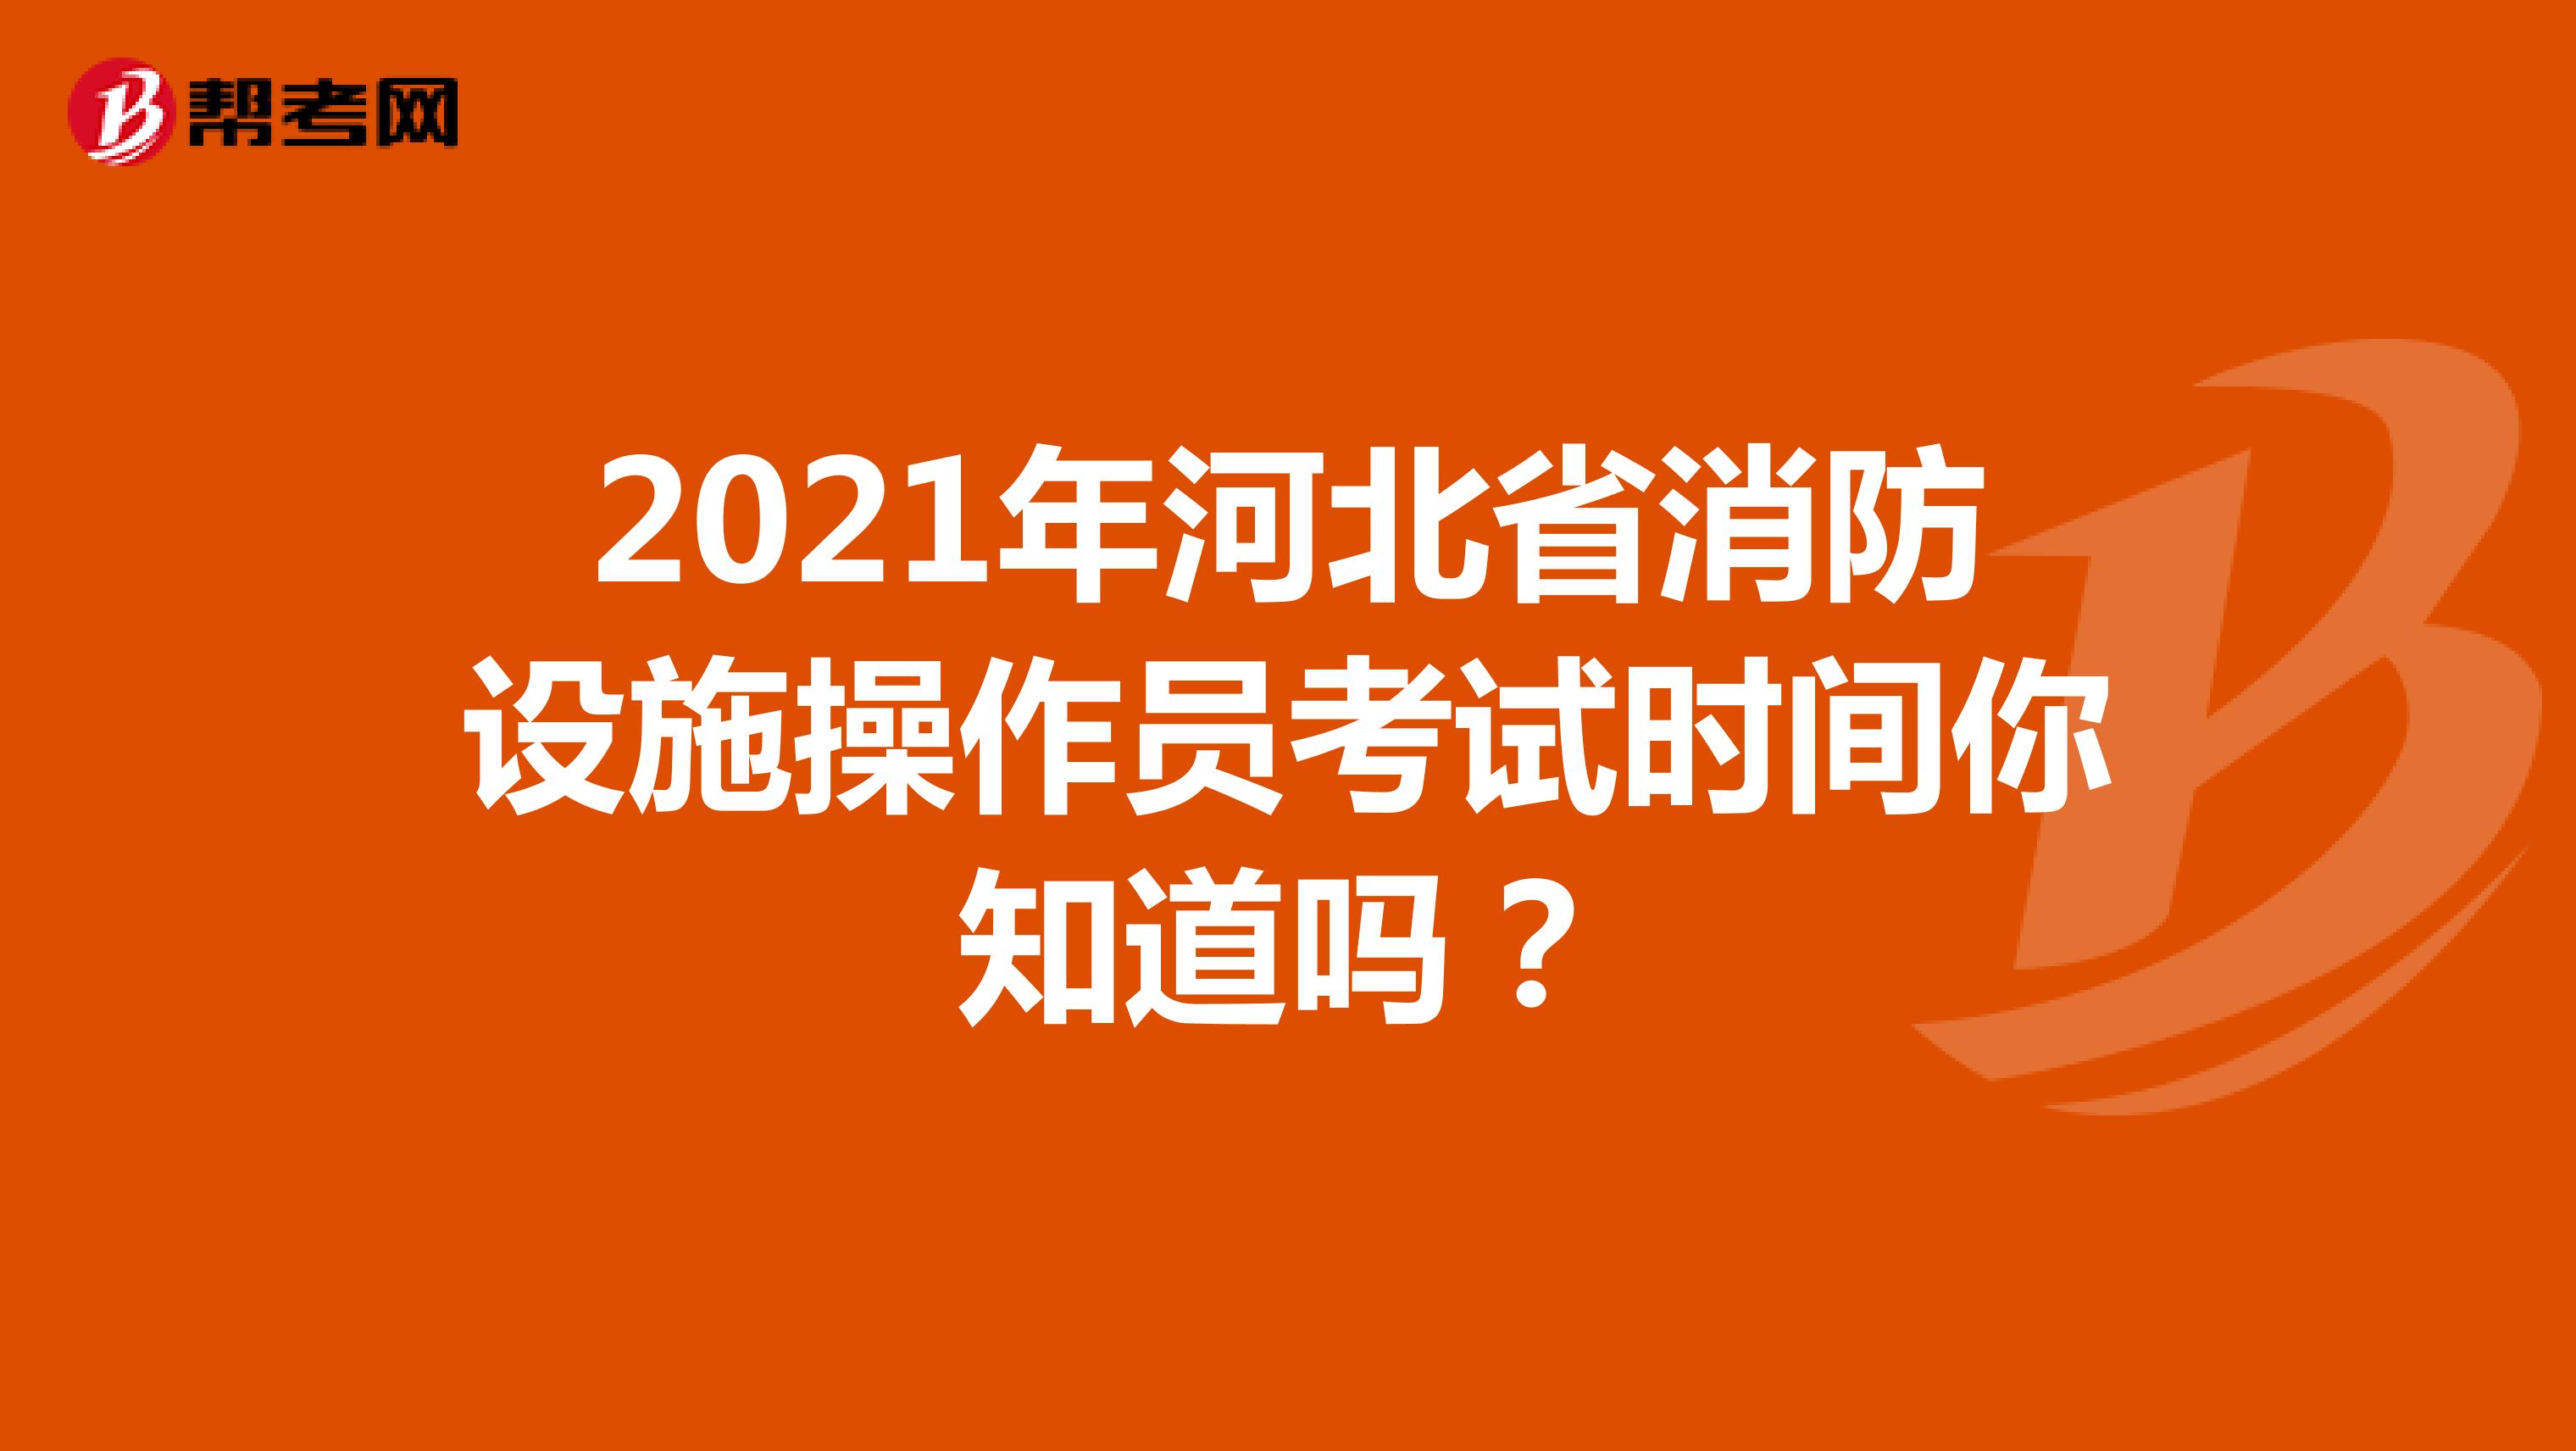 2021年河北省消防设施操作员考试时间你知道吗？